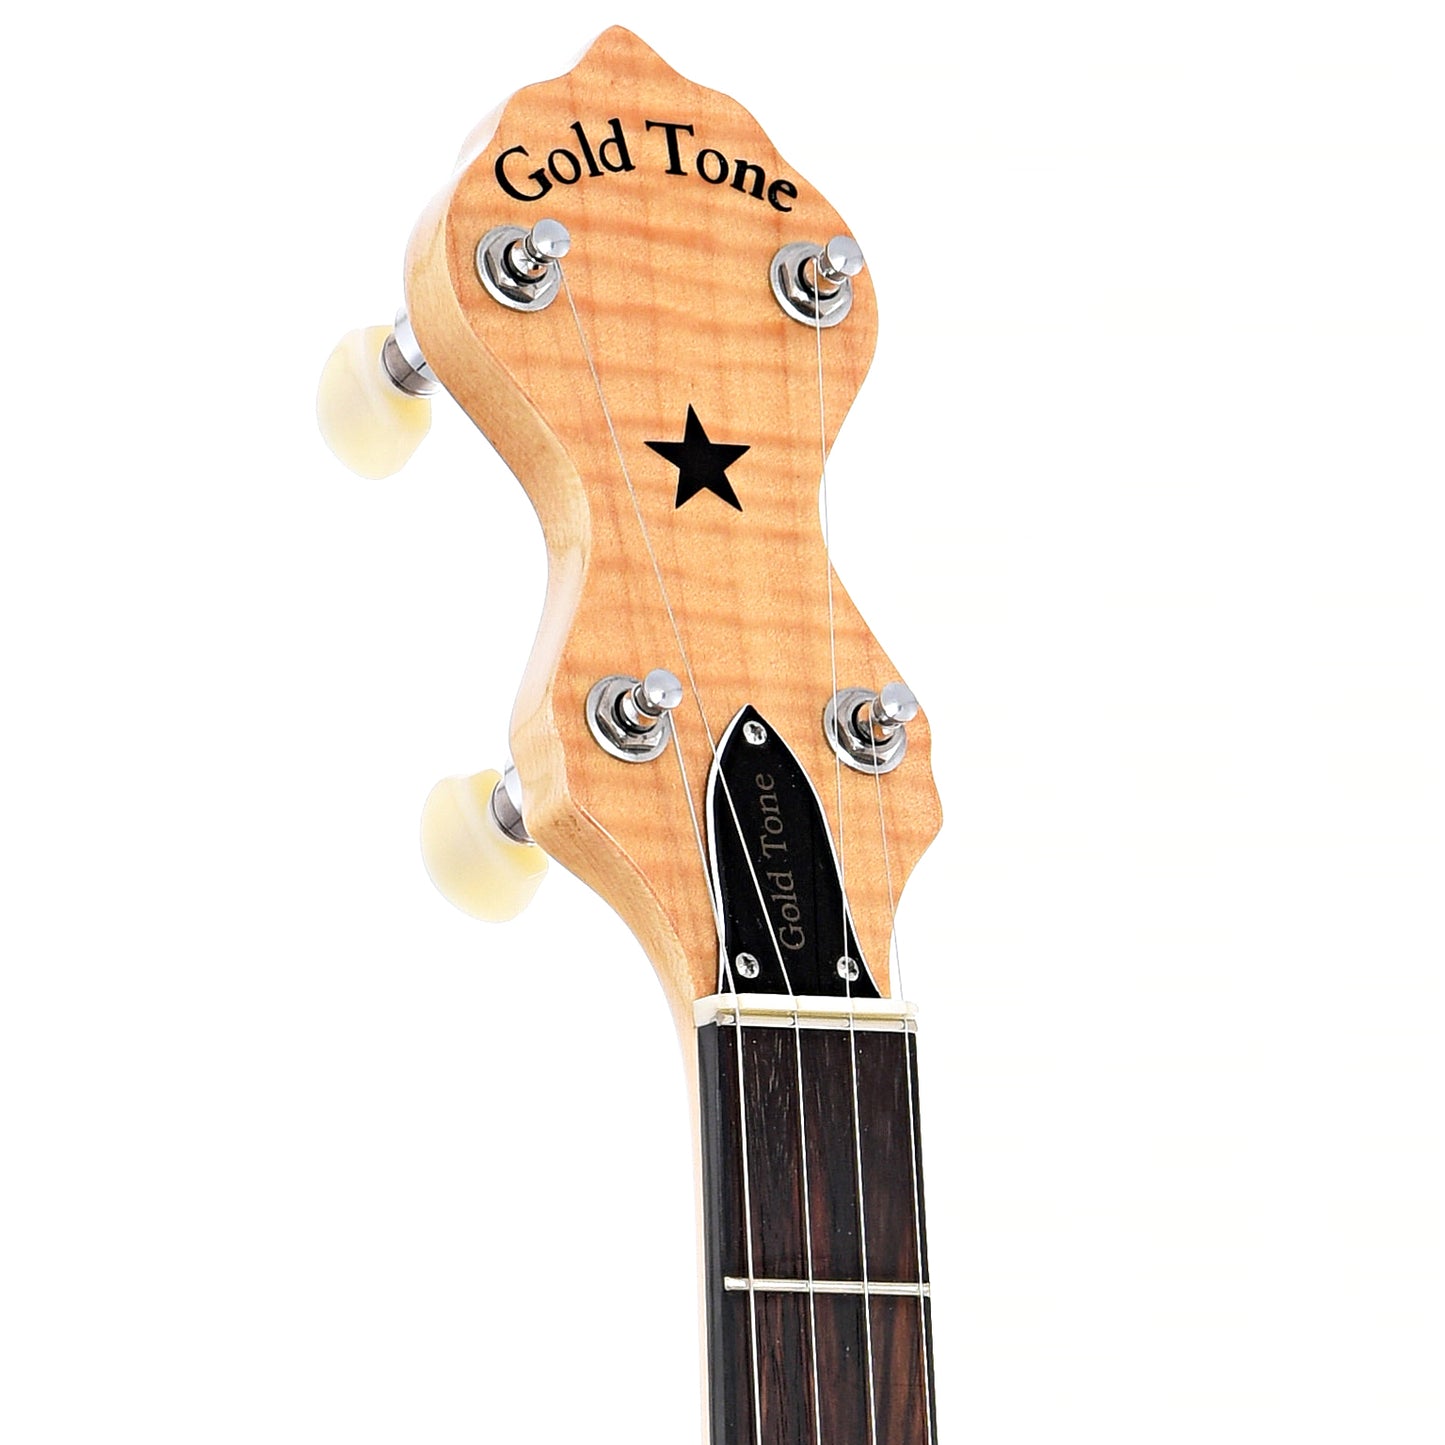 Gold Tone MM-150 Maple Nountain Openback Banjo & Case